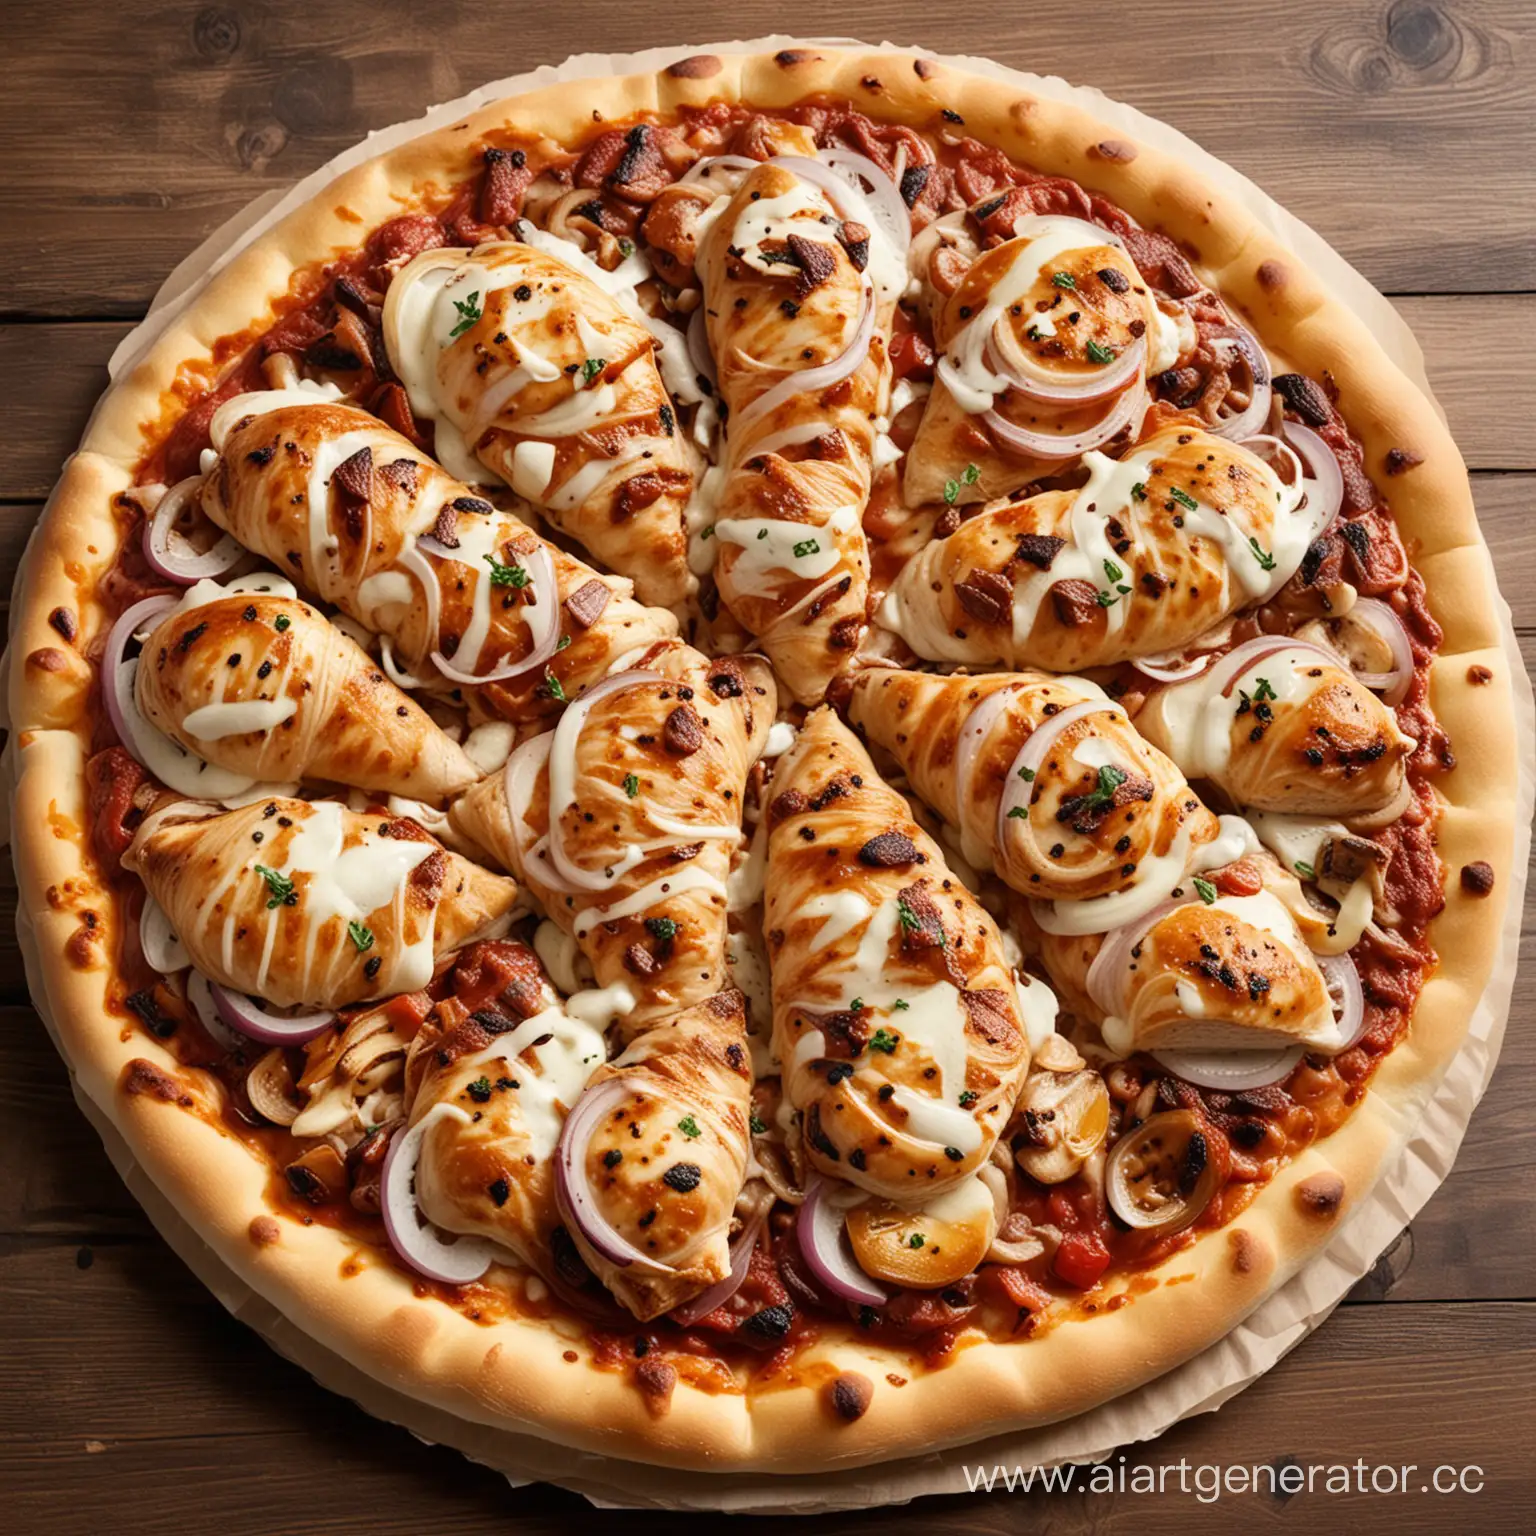 PIZZA BARBECUE consisting of: Grilled chicken, mozzarella cheese, onion, tomato sauce, barbecue, yeast dough (33 cm)